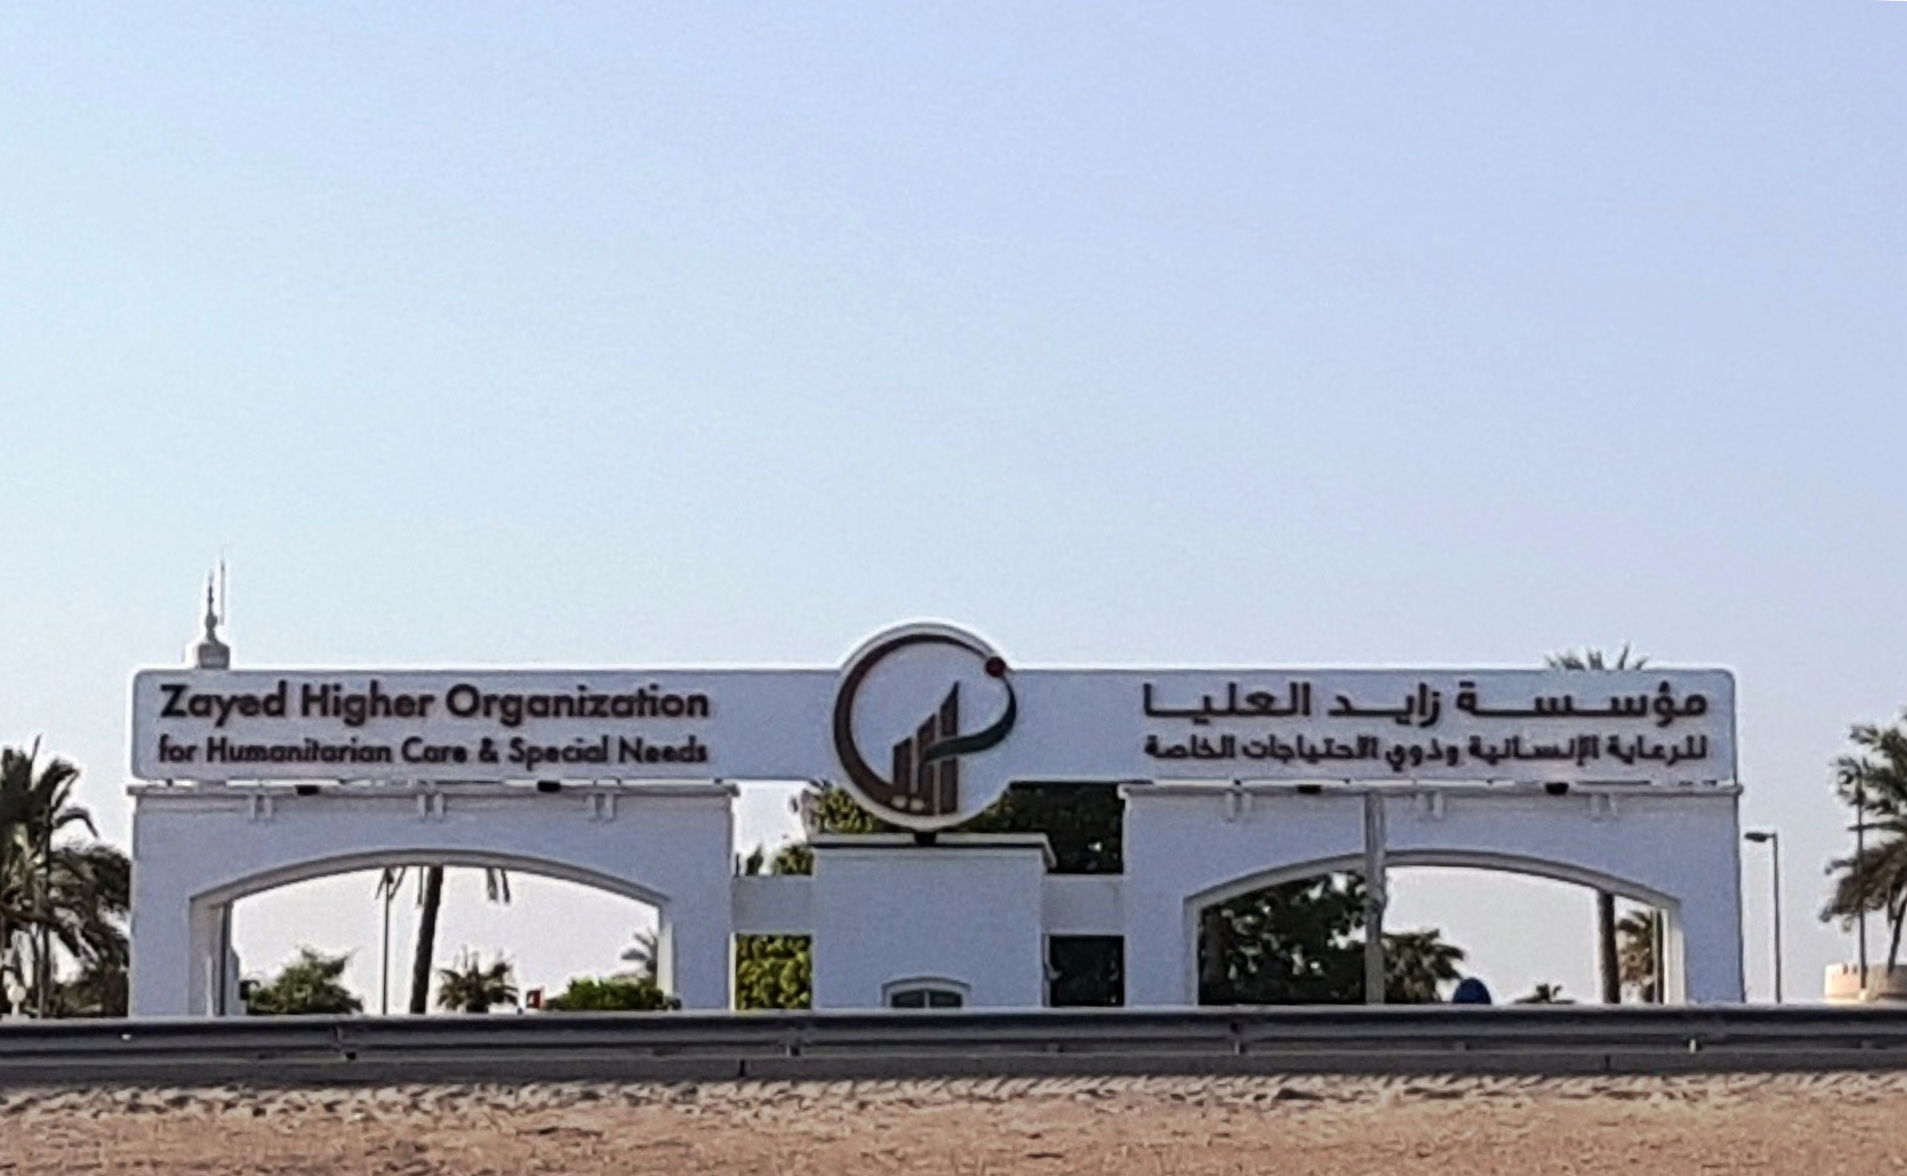 Zayed Higher Organisation, Abu Dhabi, United Arab Emirates